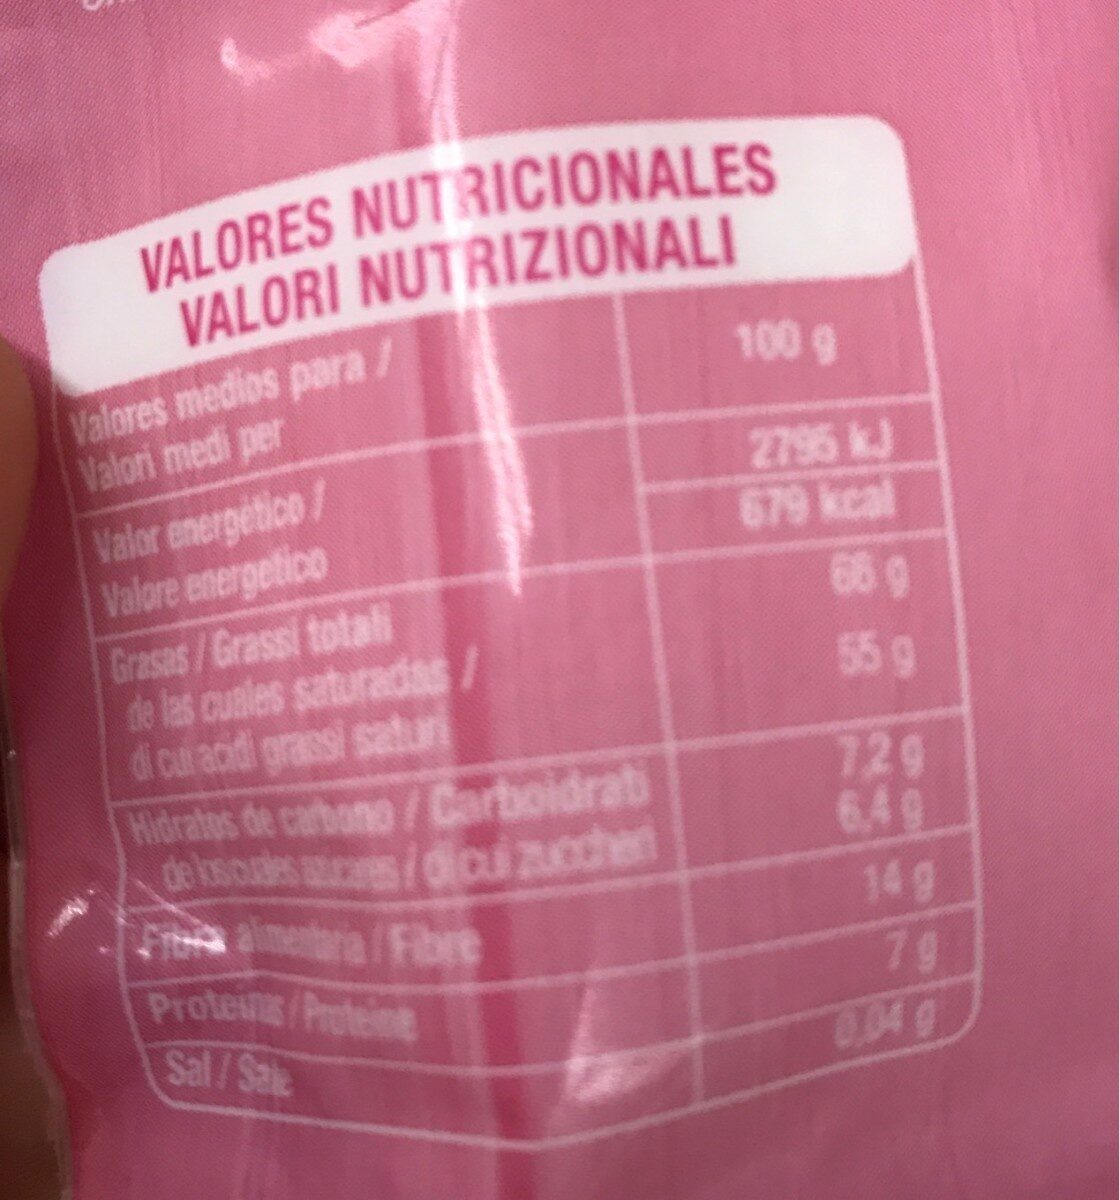 Coco rallado - Informació nutricional - es